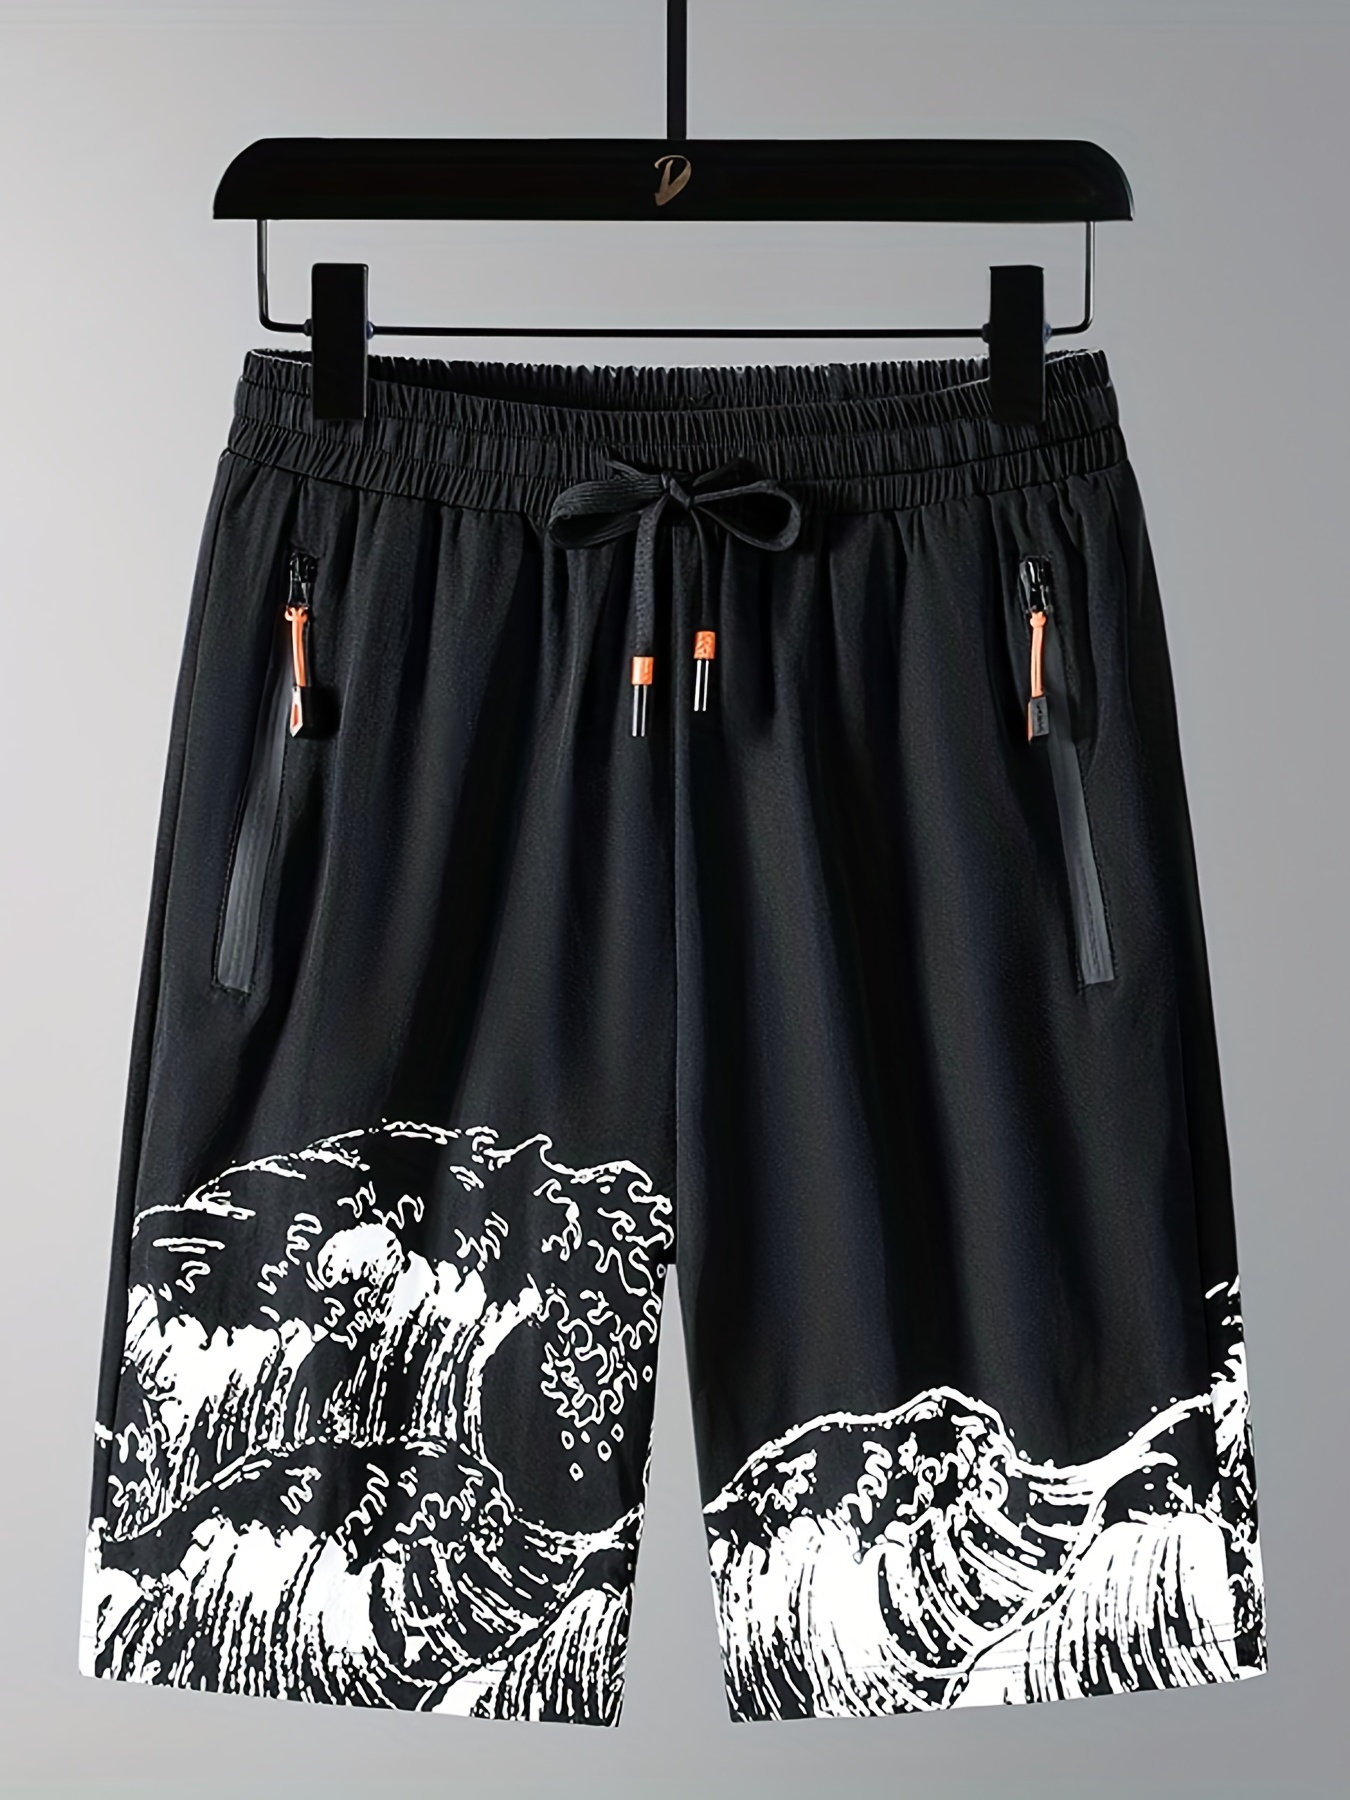 Pantalones cortos deportivos para hombre, ropa deportiva de secado rápido  para gimnasio, baloncesto, con cremallera y